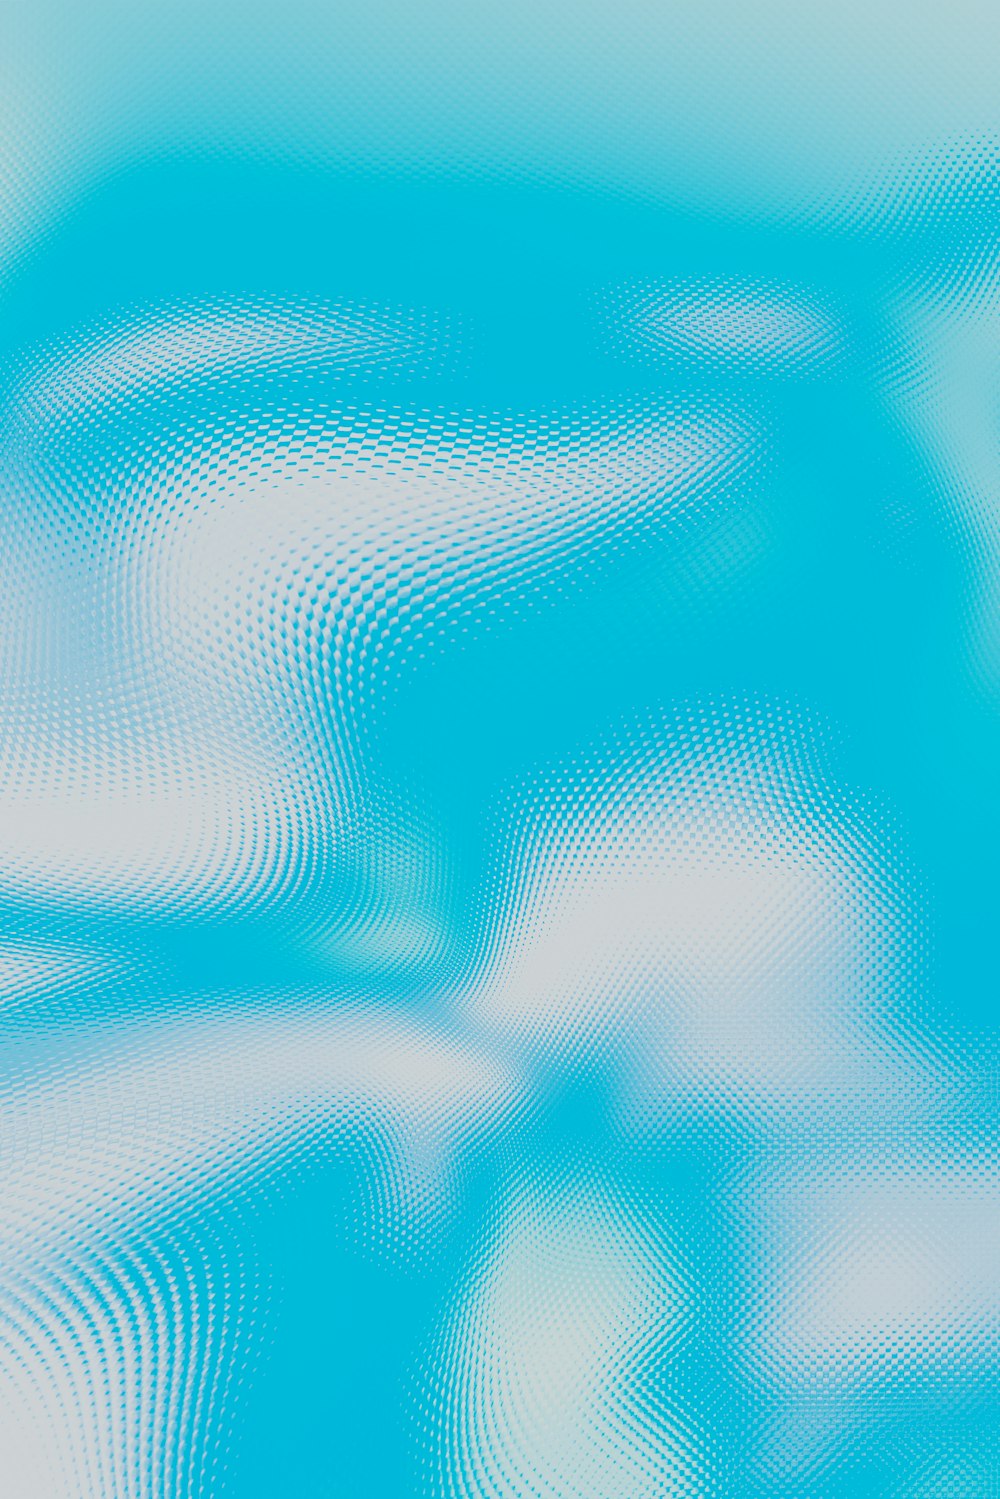 Una imagen borrosa de un cielo azul con nubes blancas